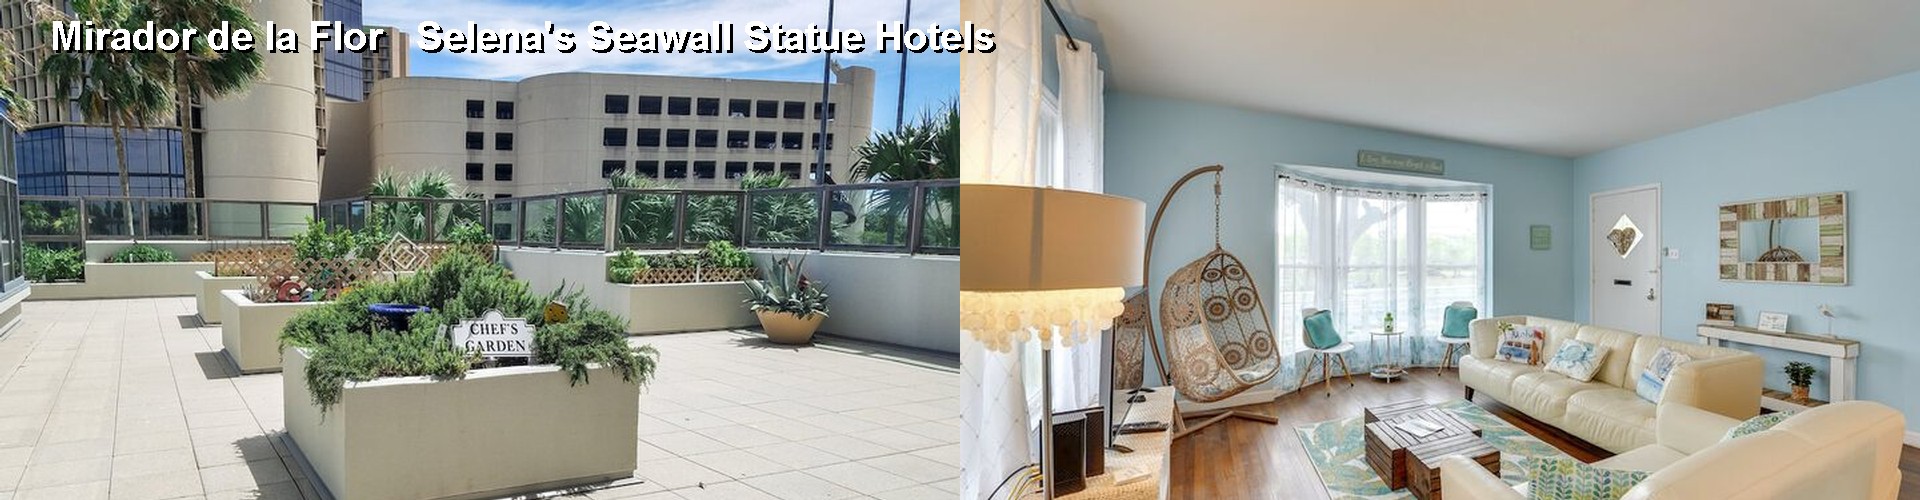 4 Best Hotels near Mirador de la Flor   Selena's Seawall Statue